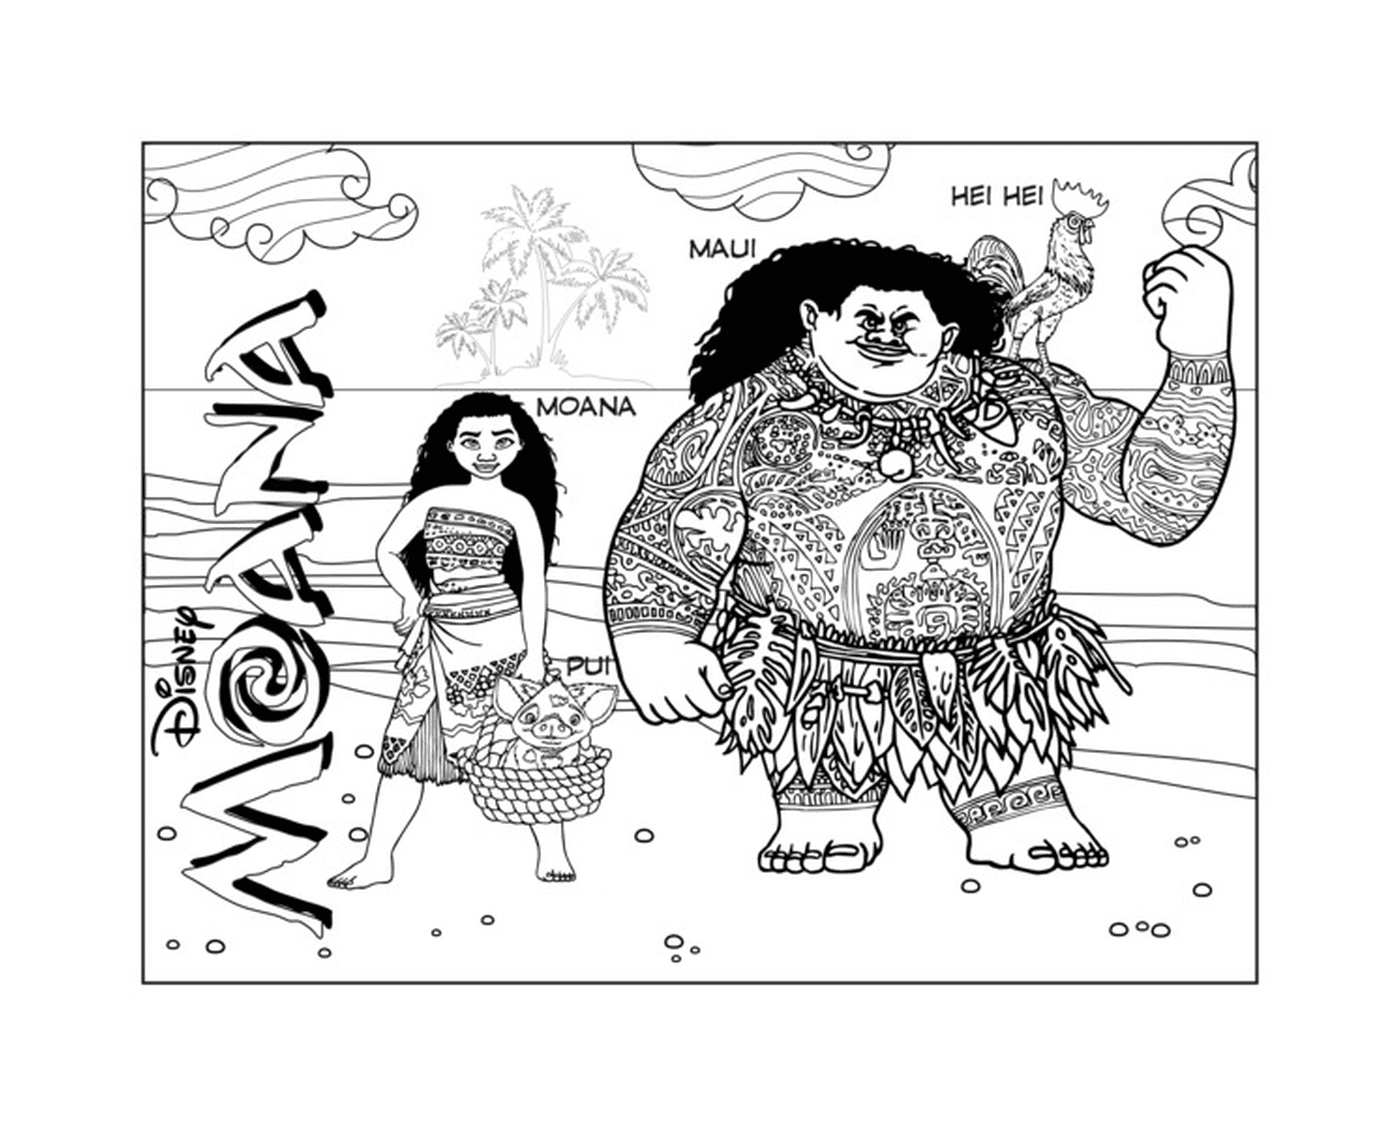  Moana e Maui, dupla de aventureiros 